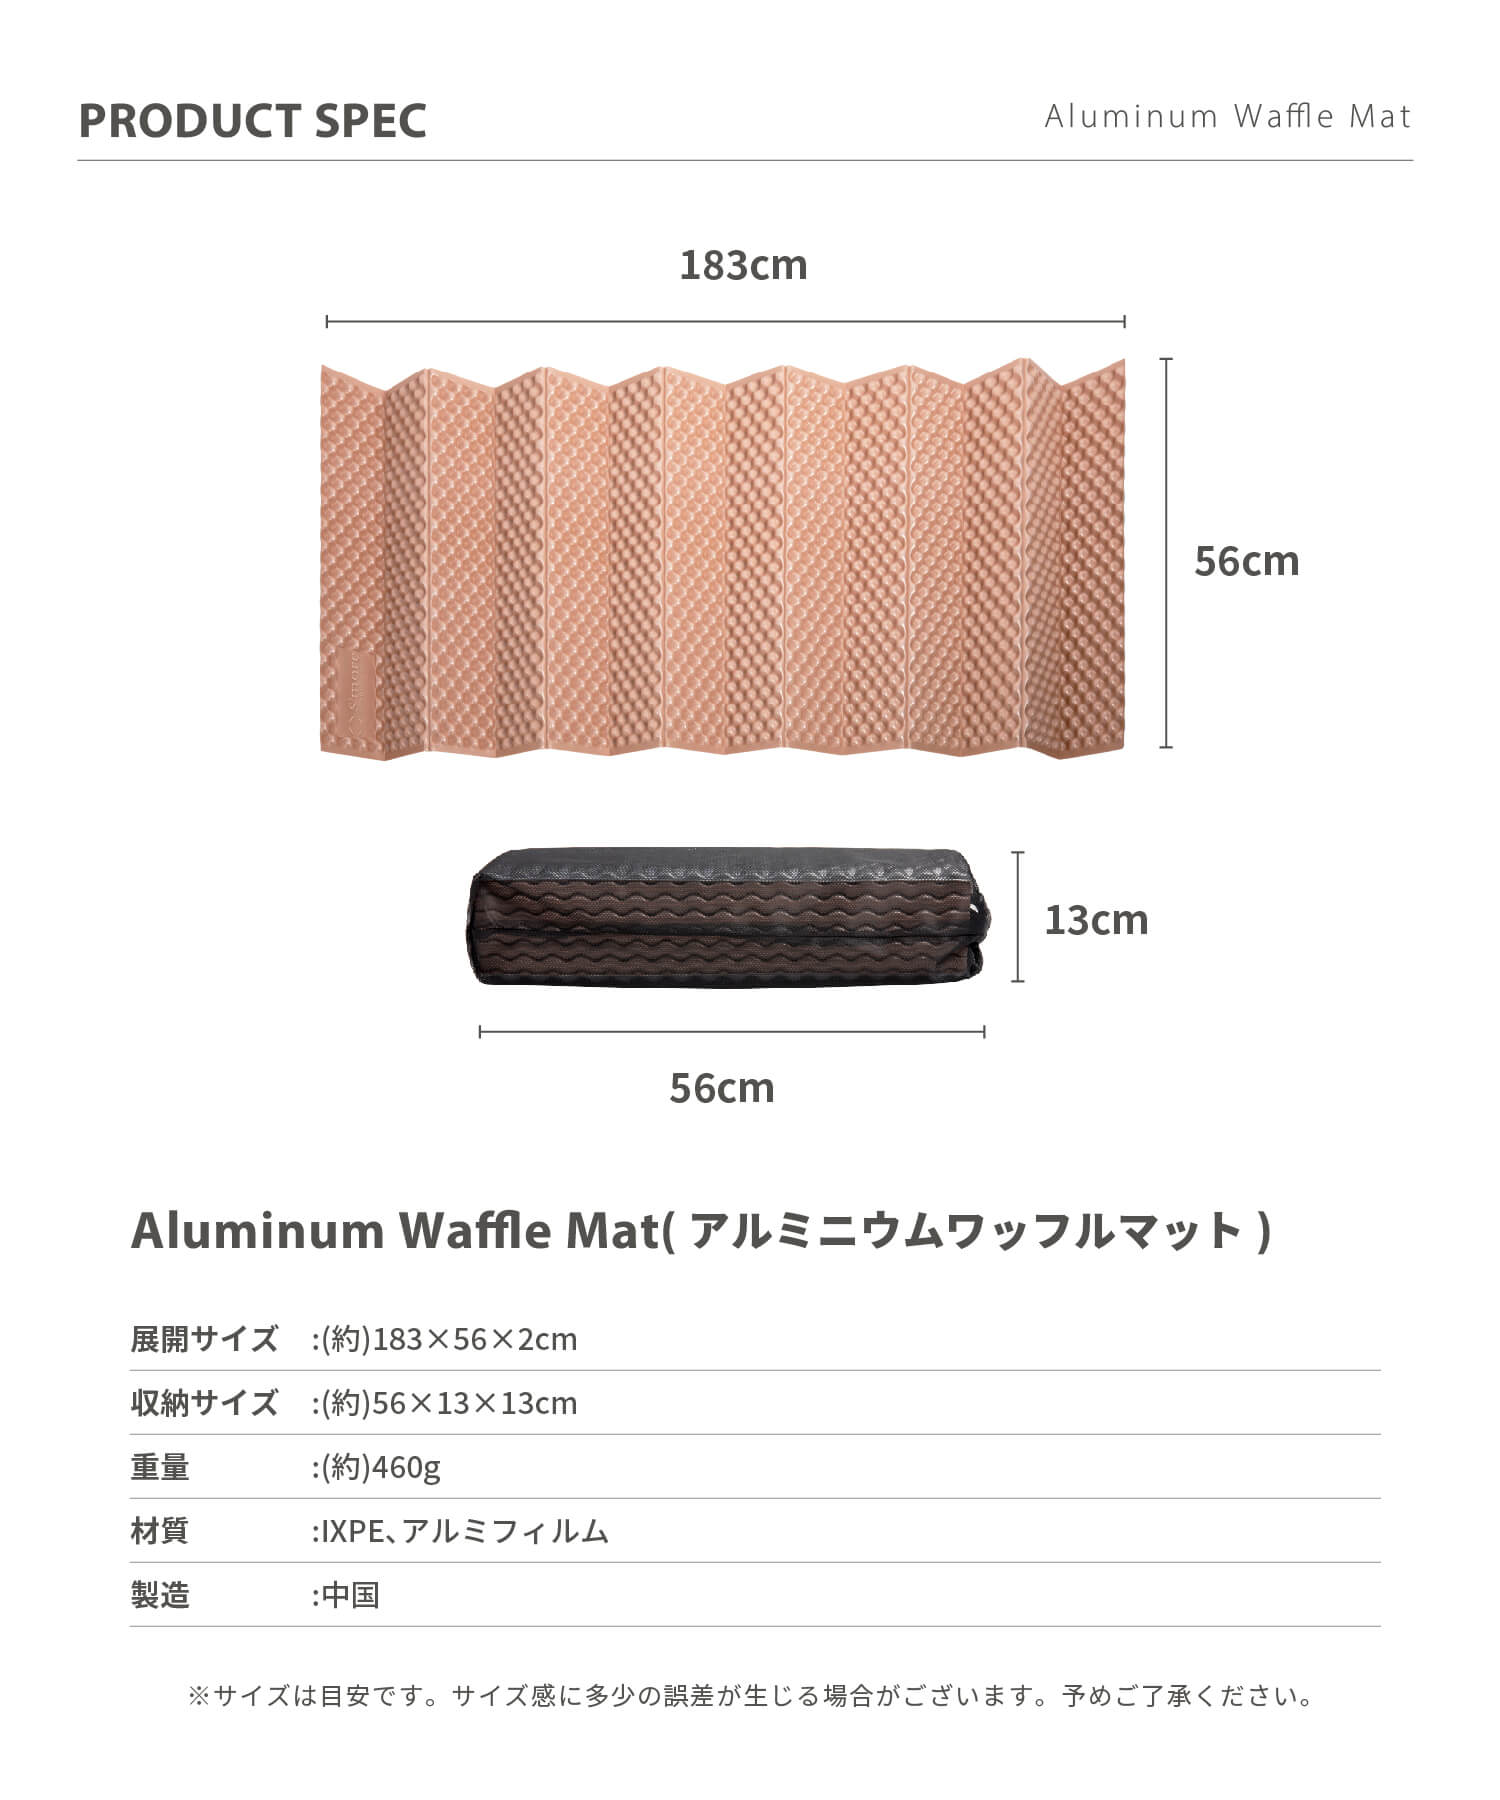 スモア Aluminum Waffle mat S